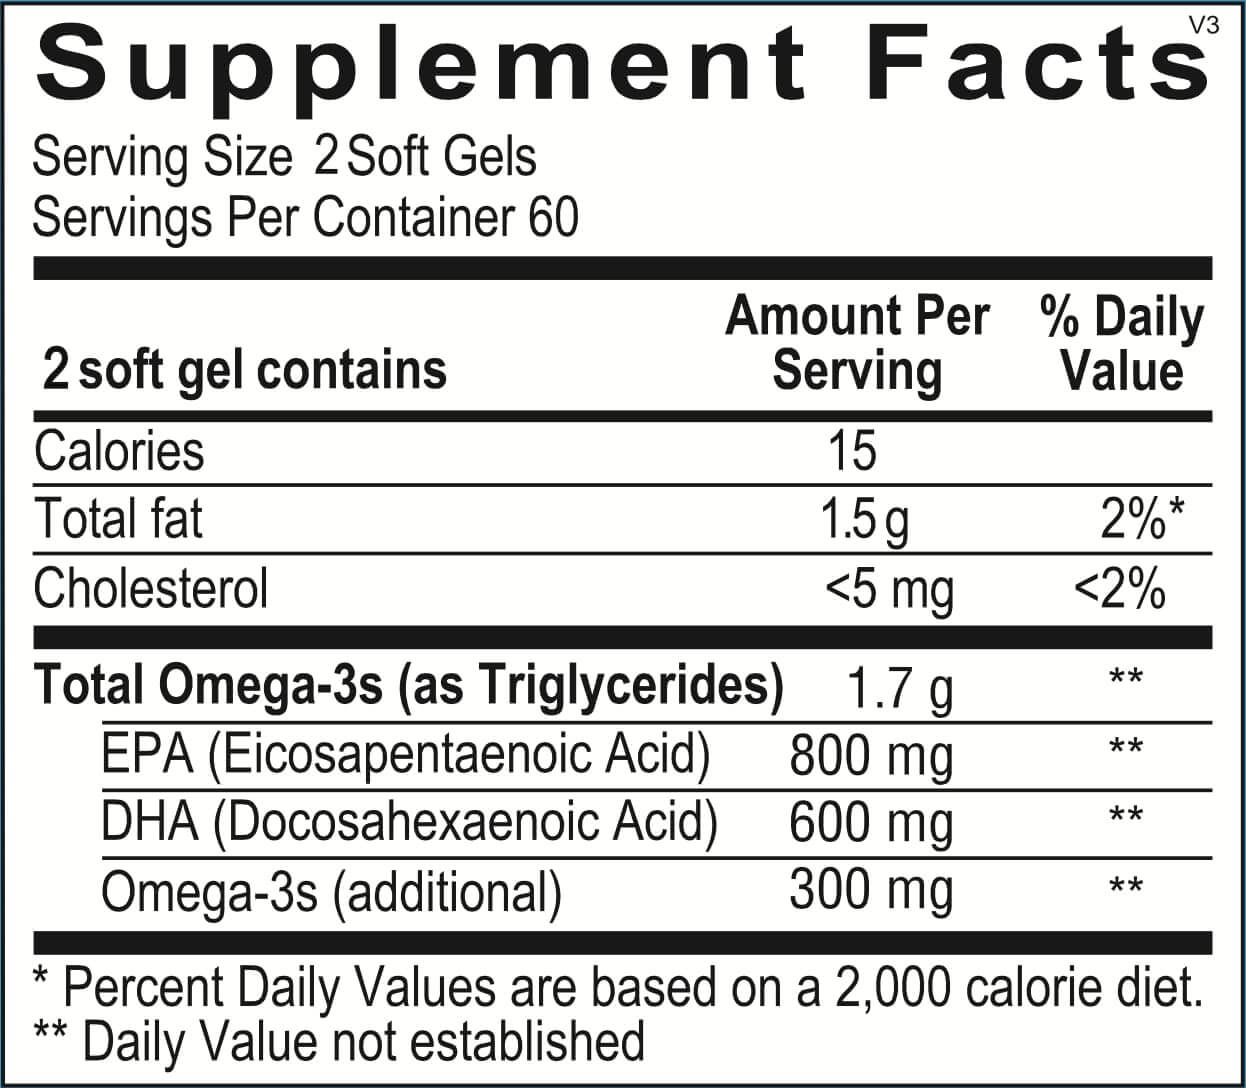 omega-3-supplement-facts-v3